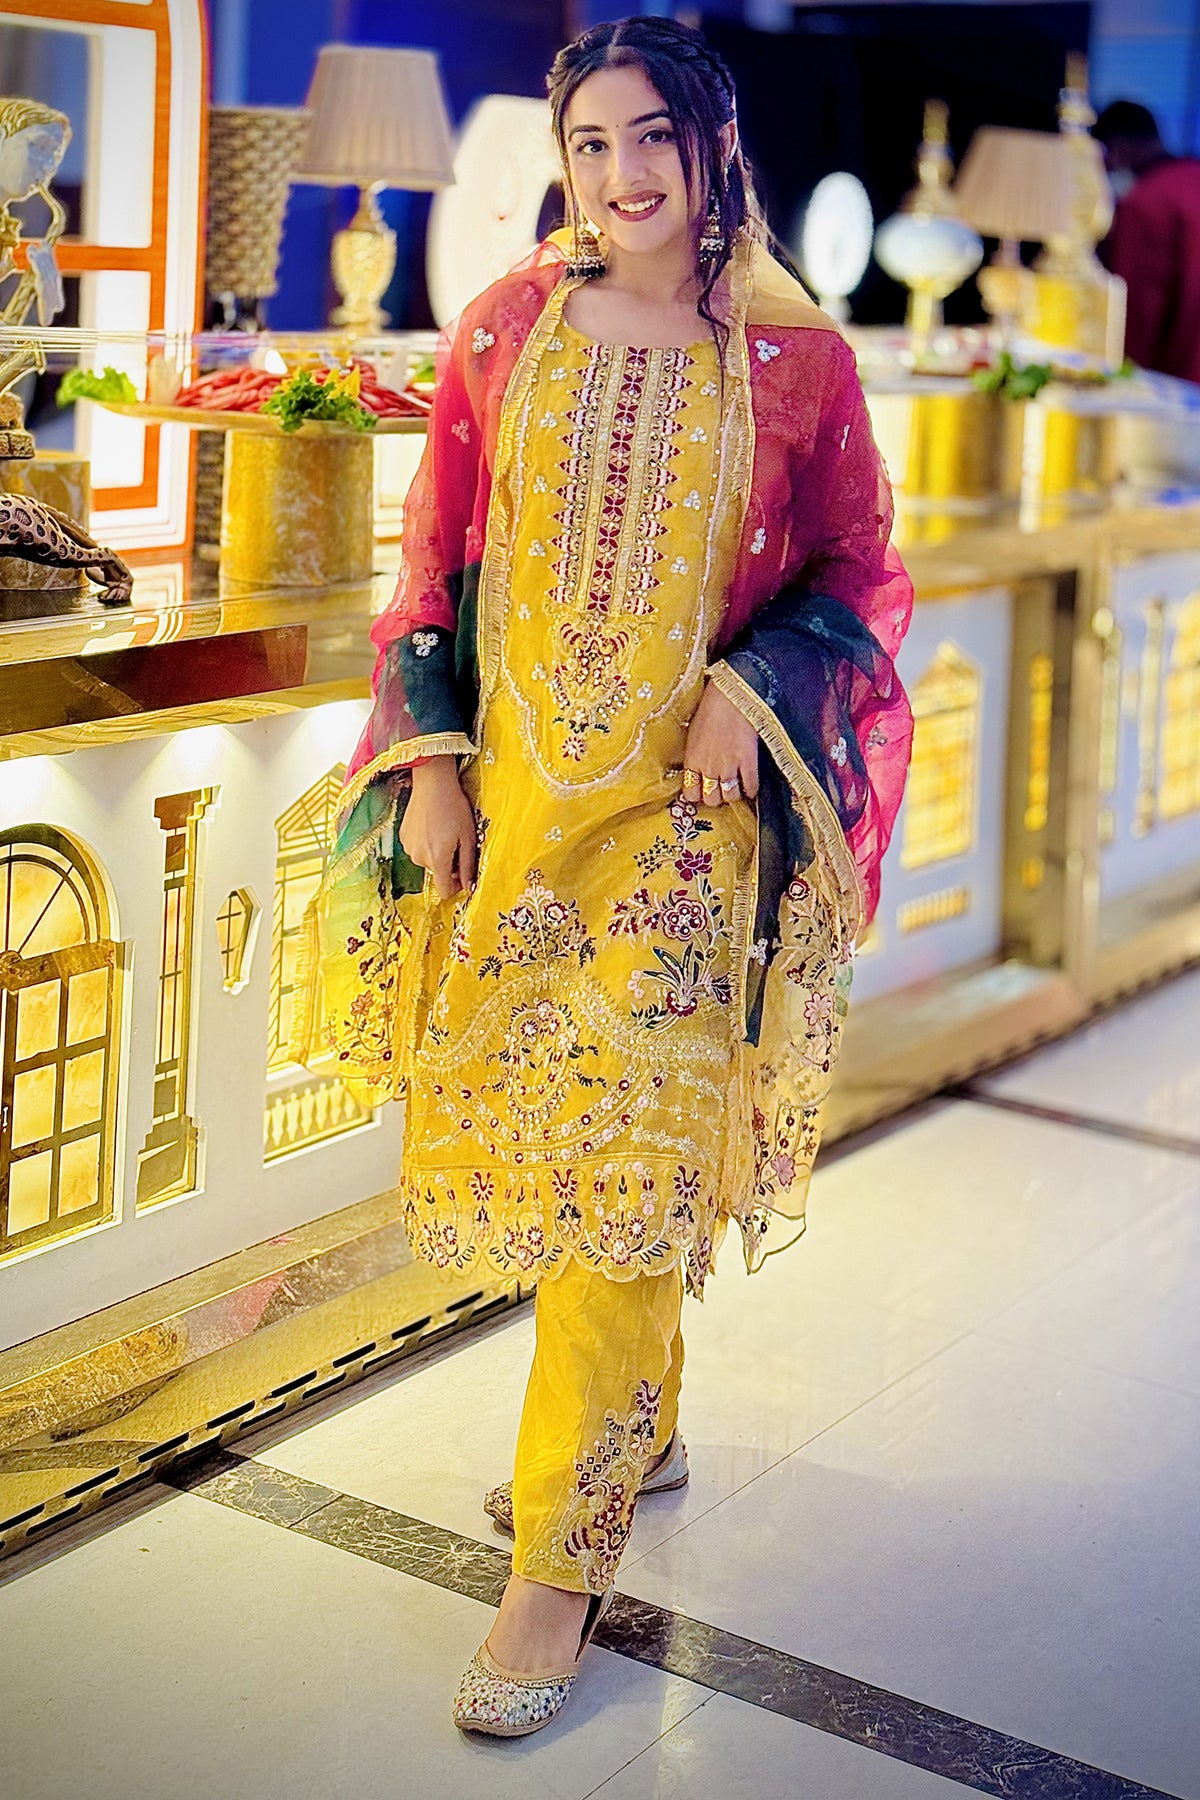 SetMyWed - Latest Wedding Ideas & Inspiration | Haldi ceremony outfit, Haldi  outfits, Haldi ceremony